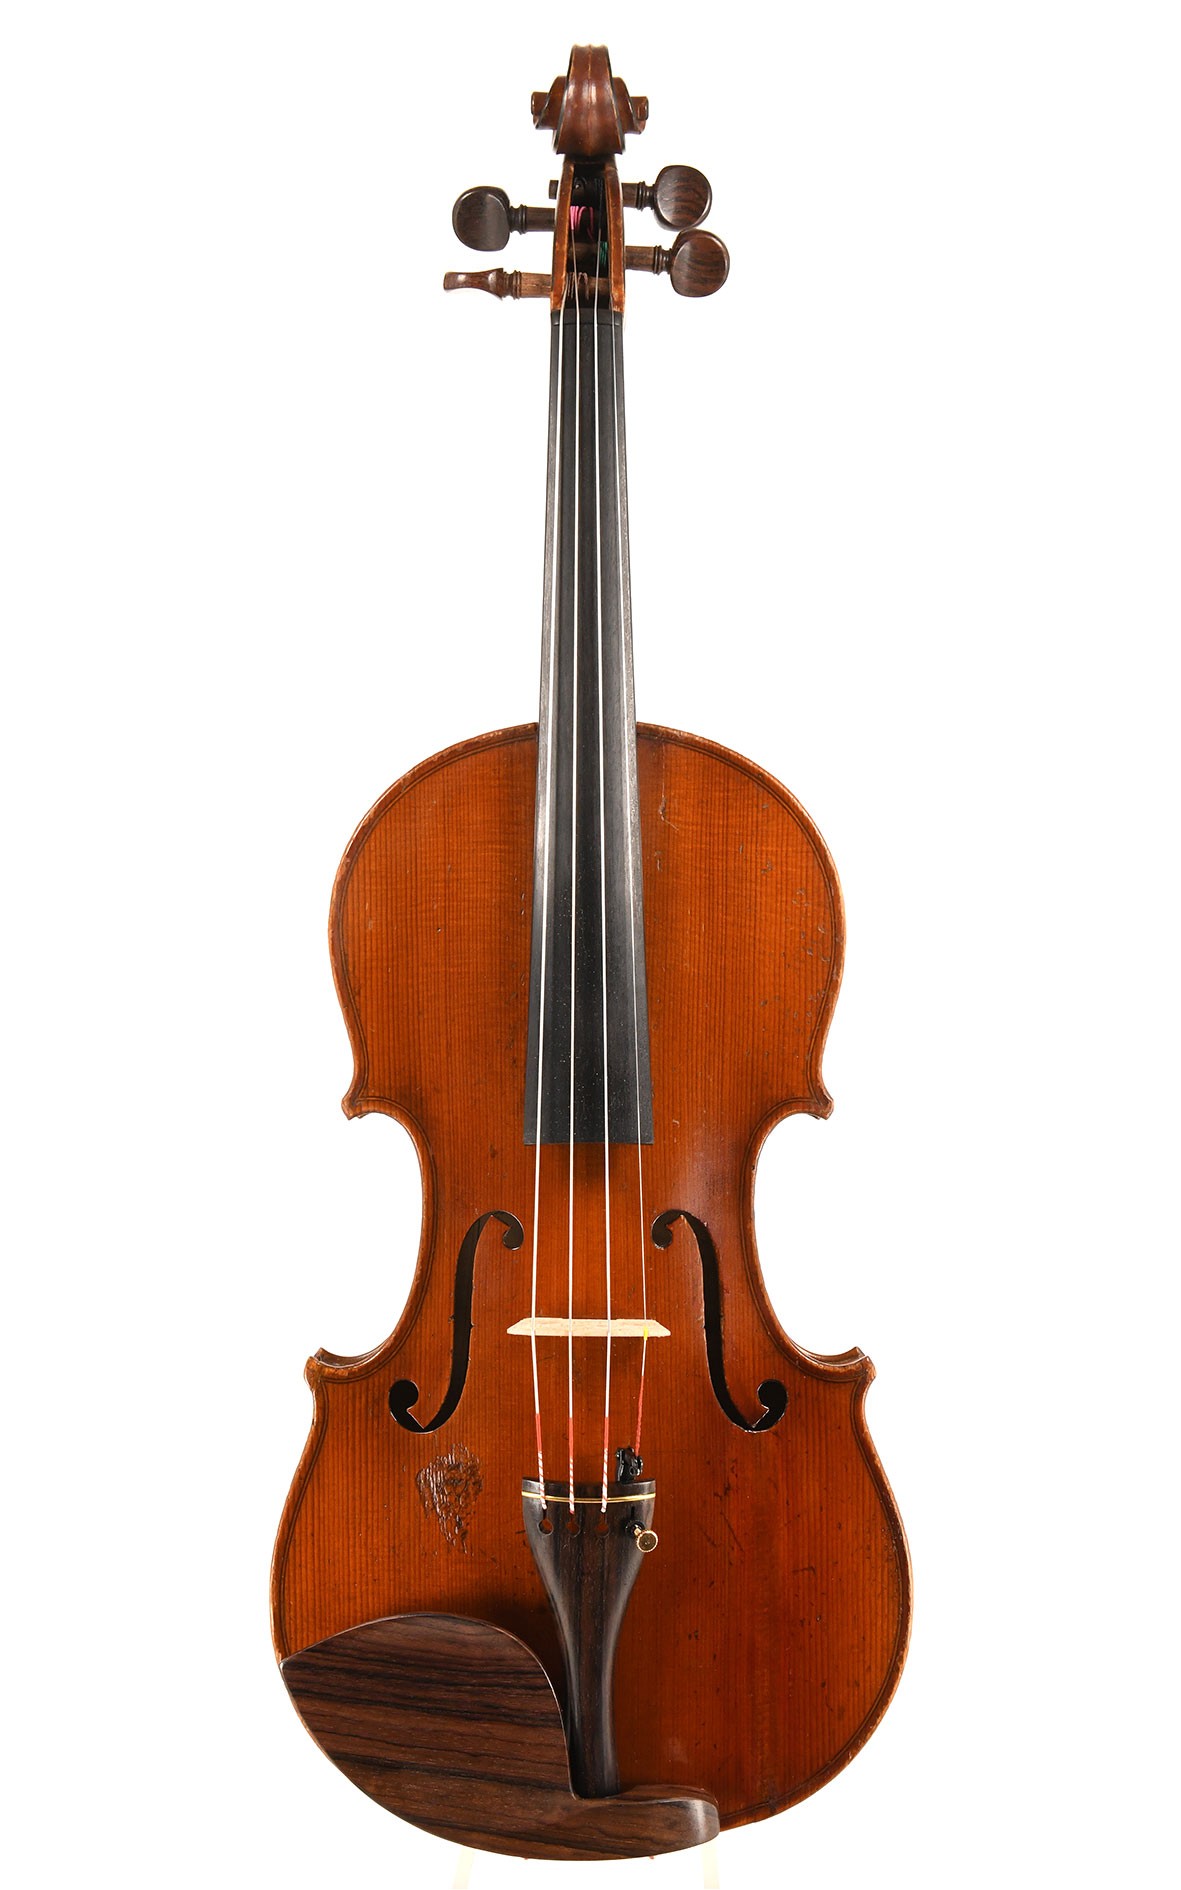 Collin-Mezin Geige aus dem Jahr 1924